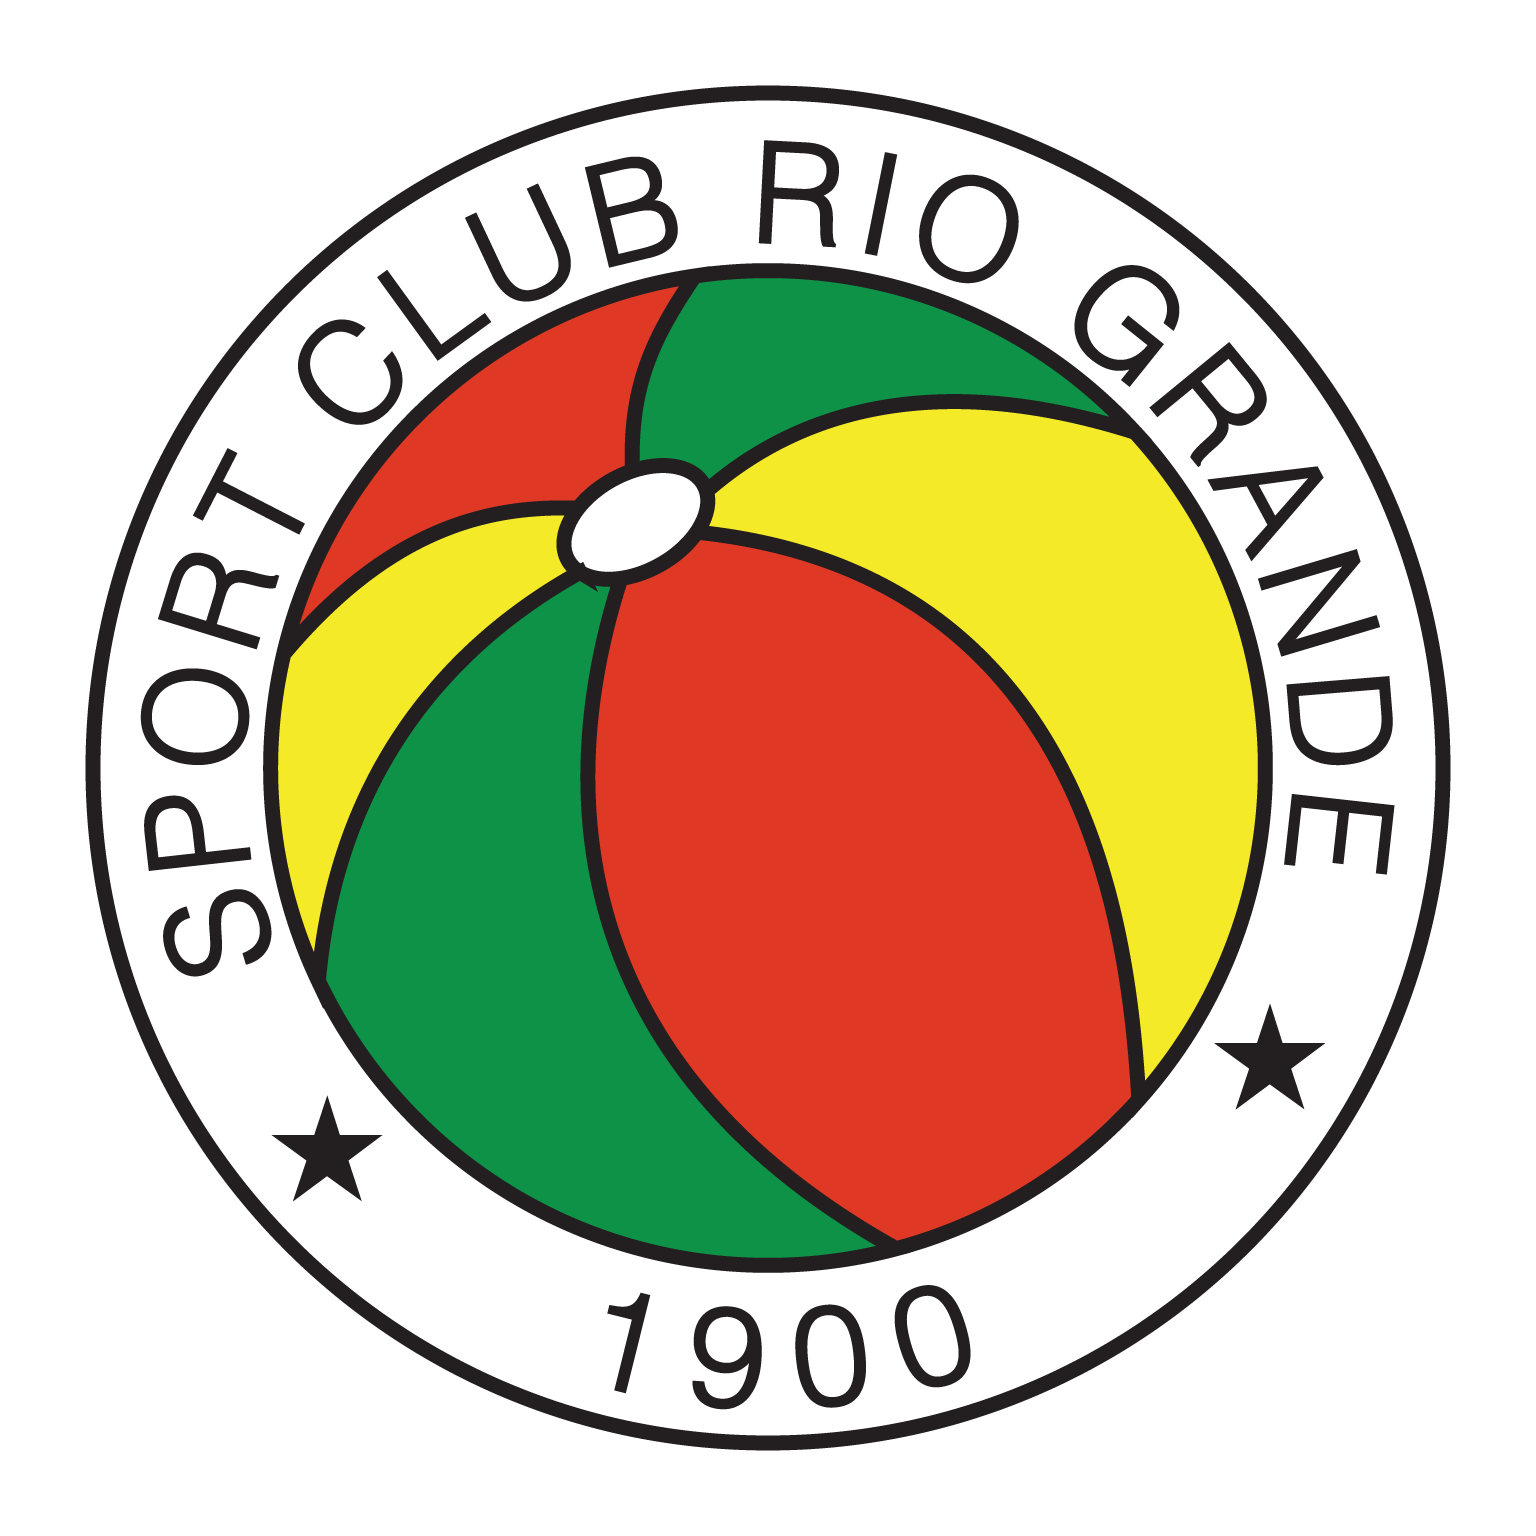 escudo sport club rio grande